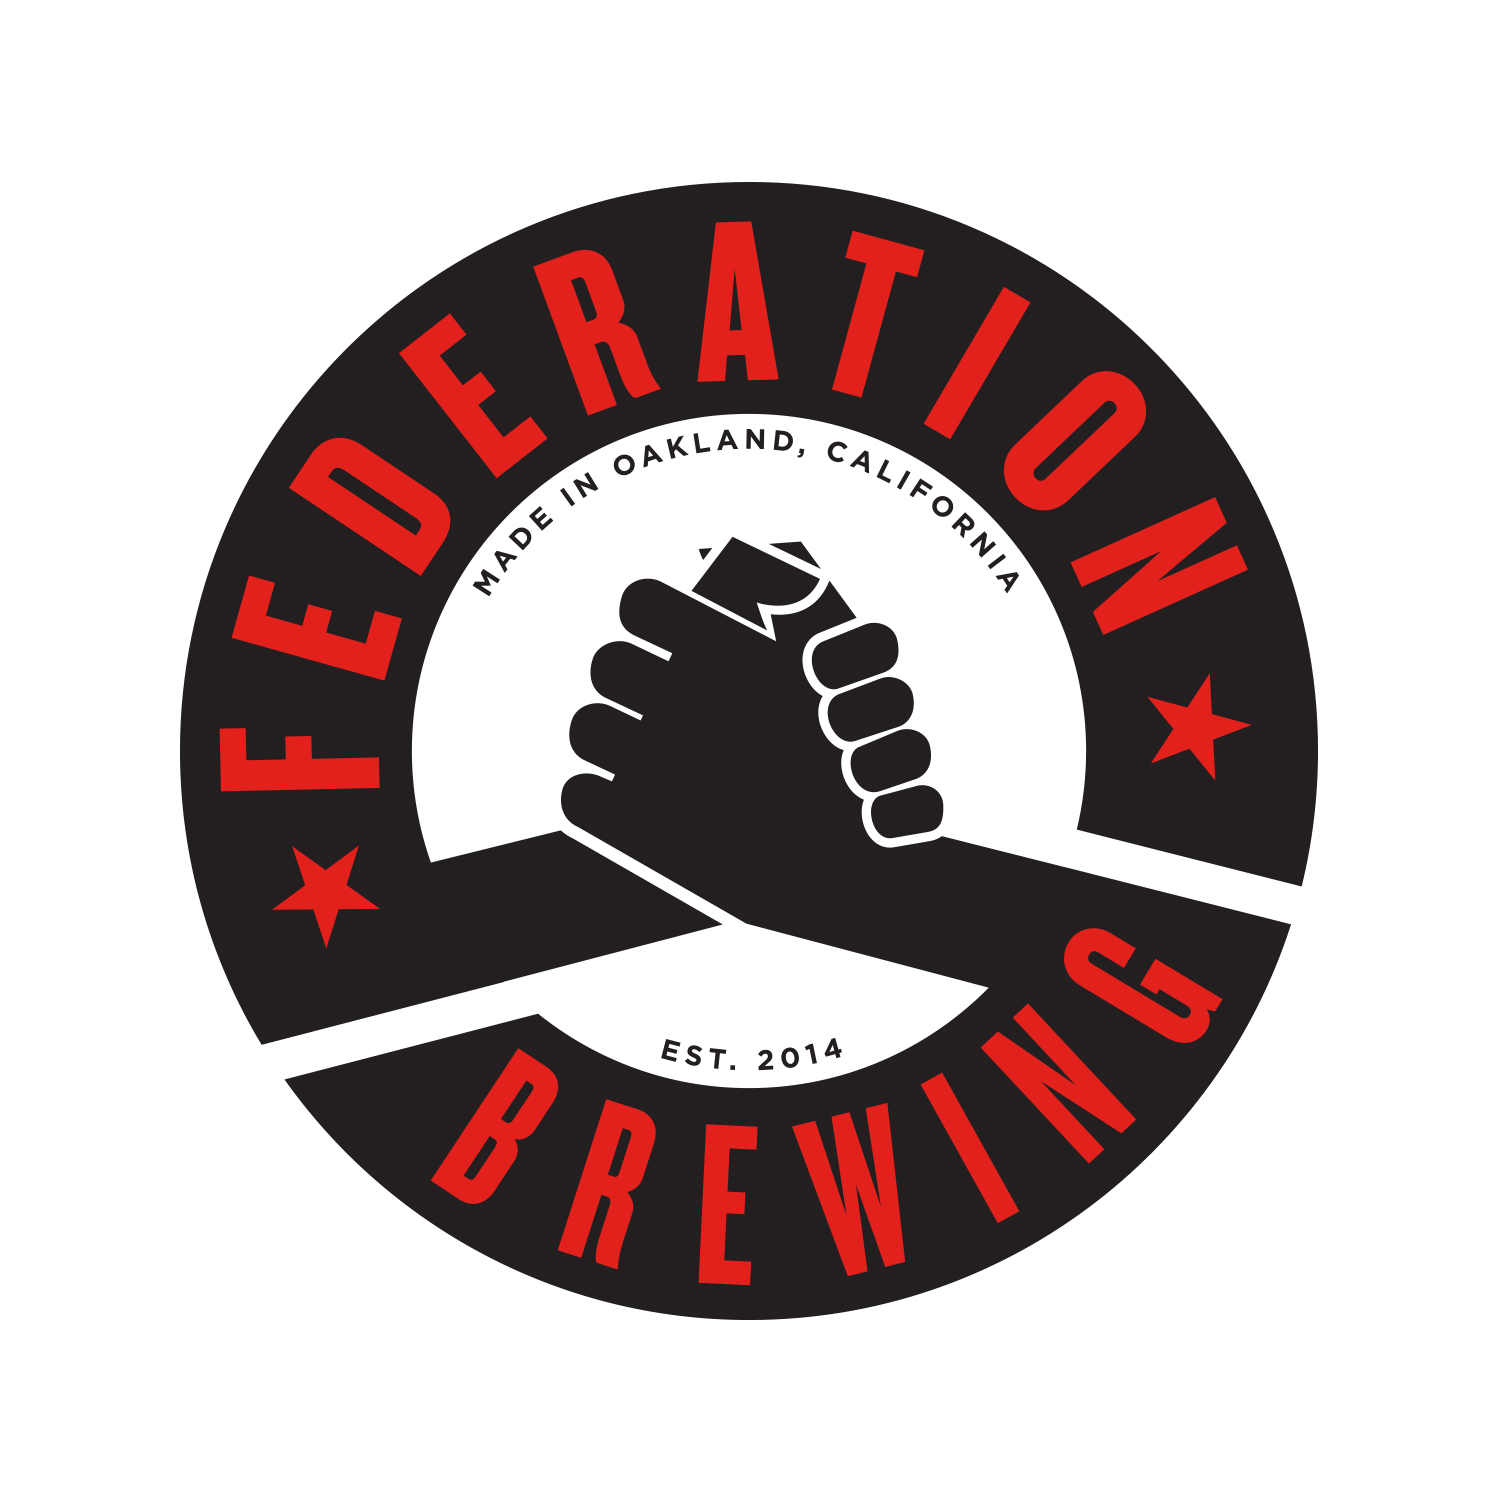 Federation_brewing.jpg